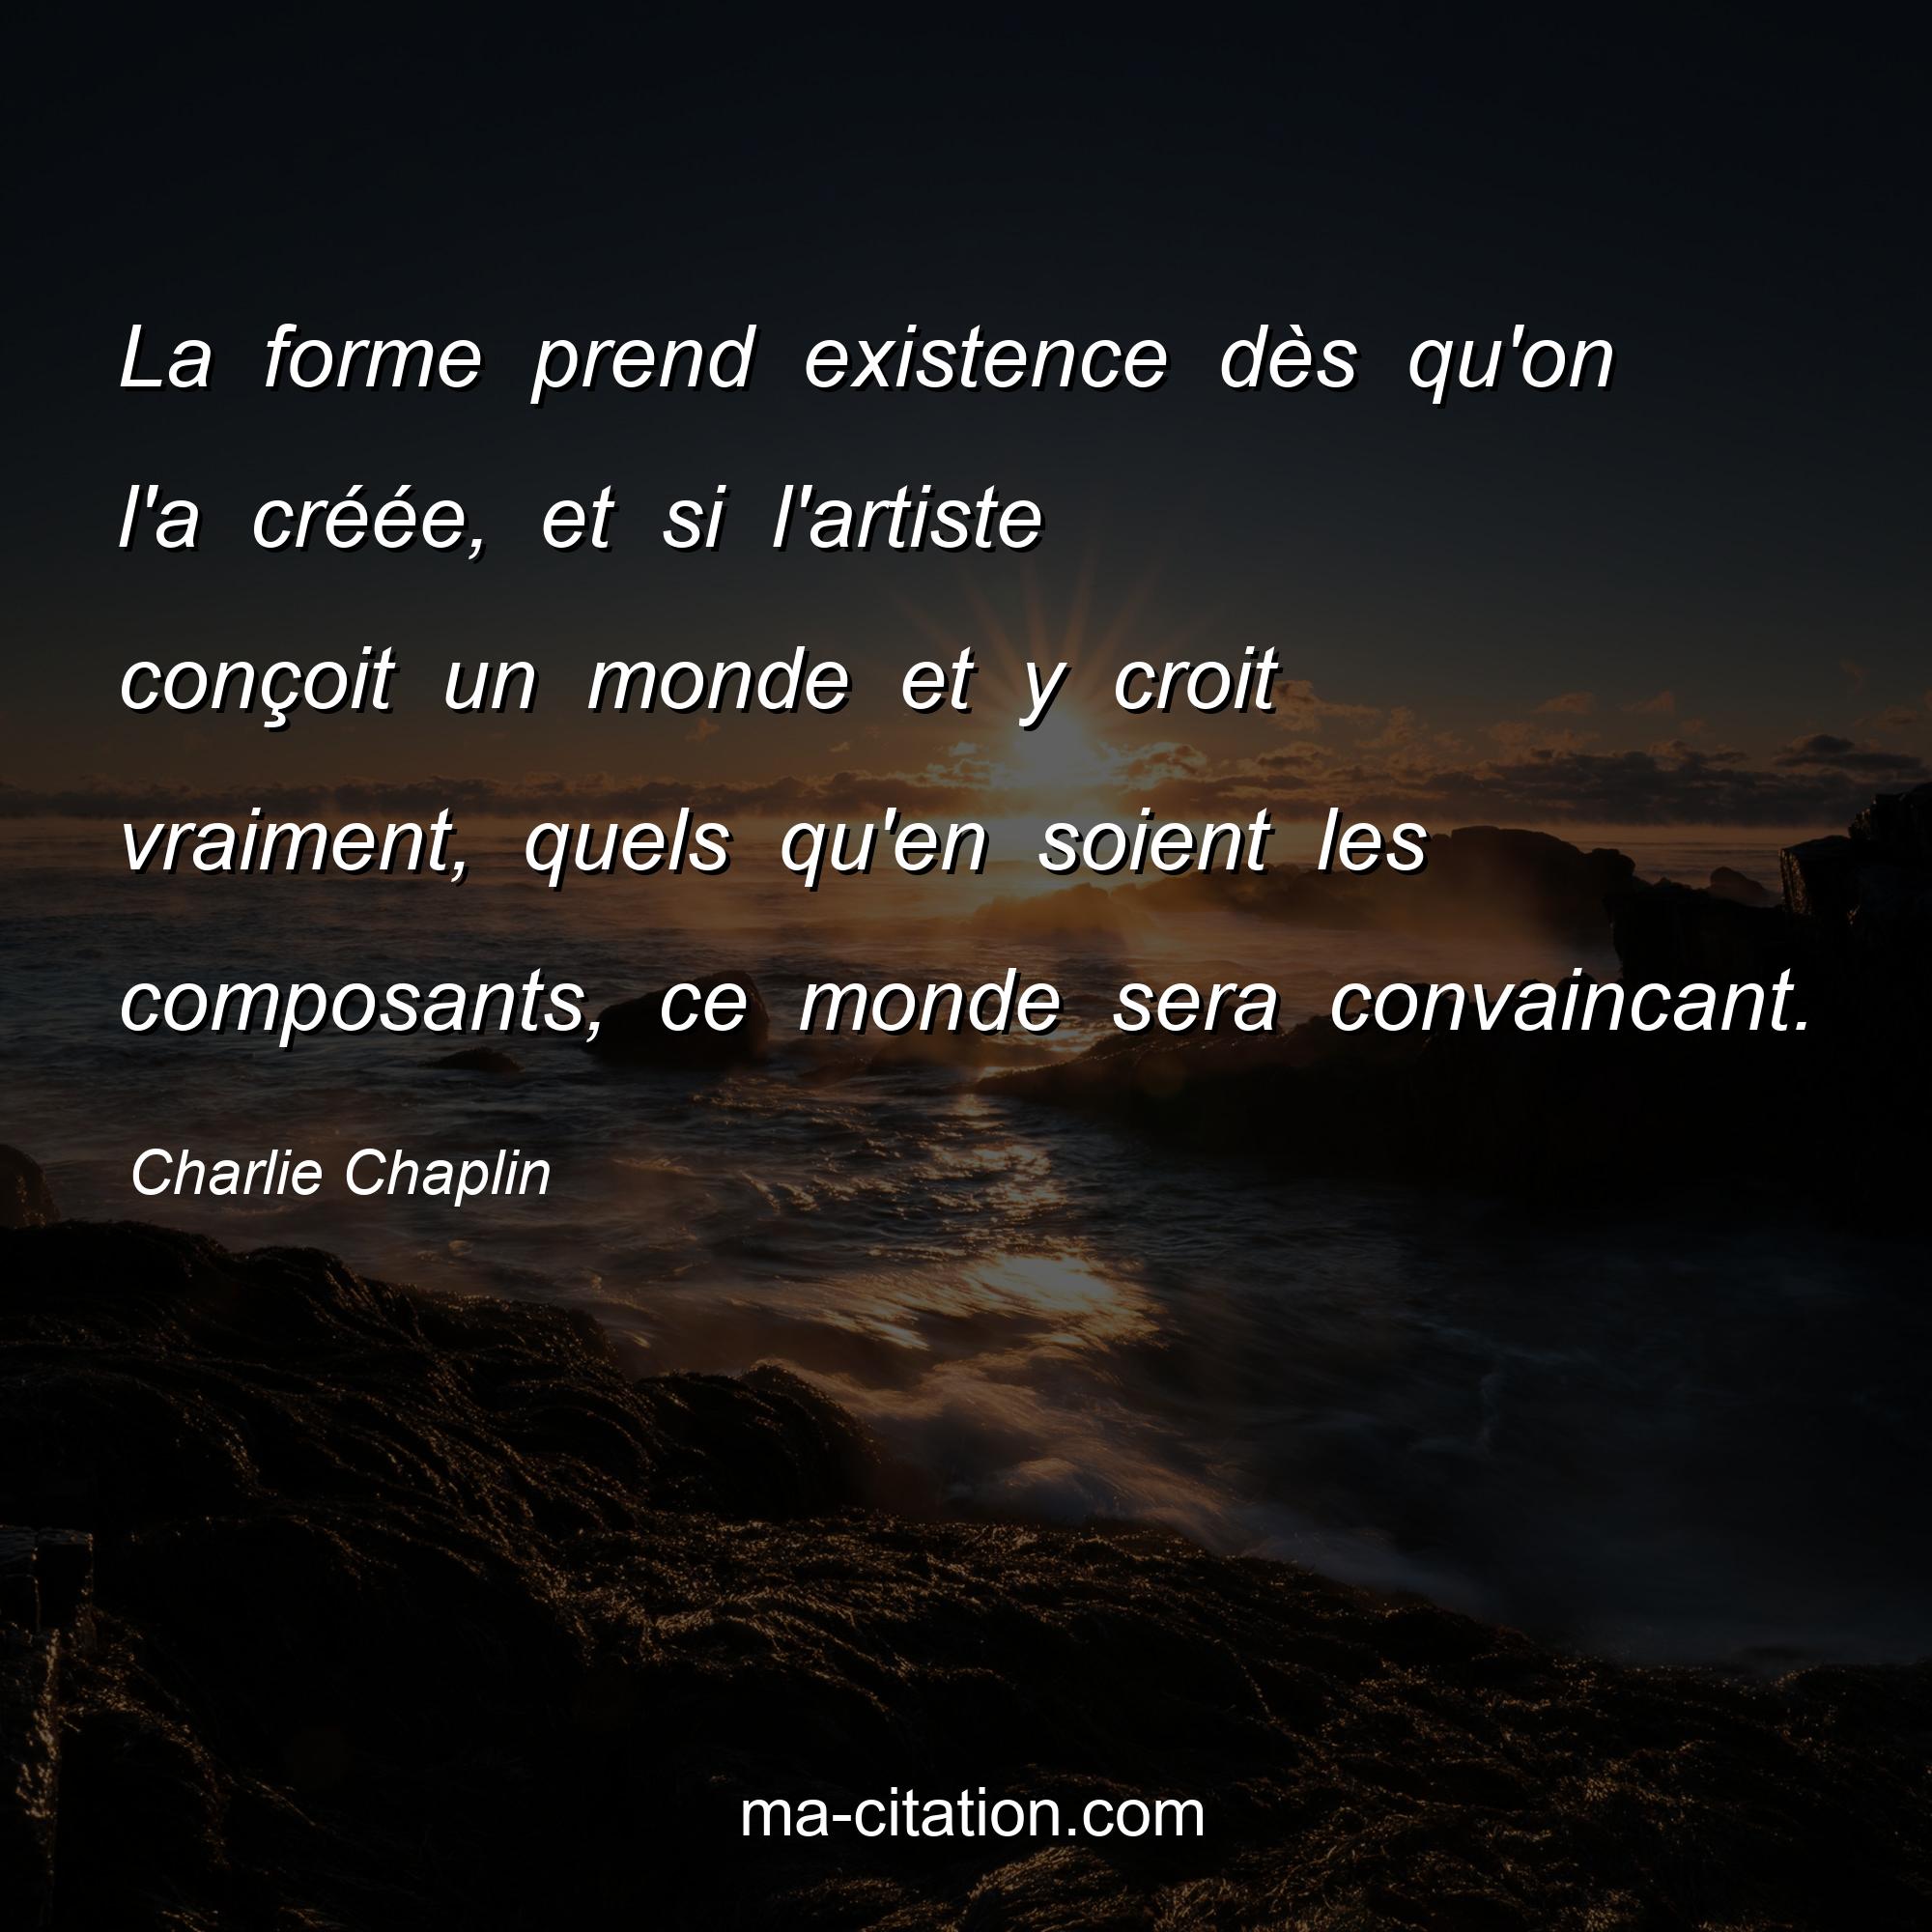 Charlie Chaplin : La forme prend existence dès qu'on l'a créée, et si l'artiste conçoit un monde et y croit vraiment, quels qu'en soient les composants, ce monde sera convaincant.